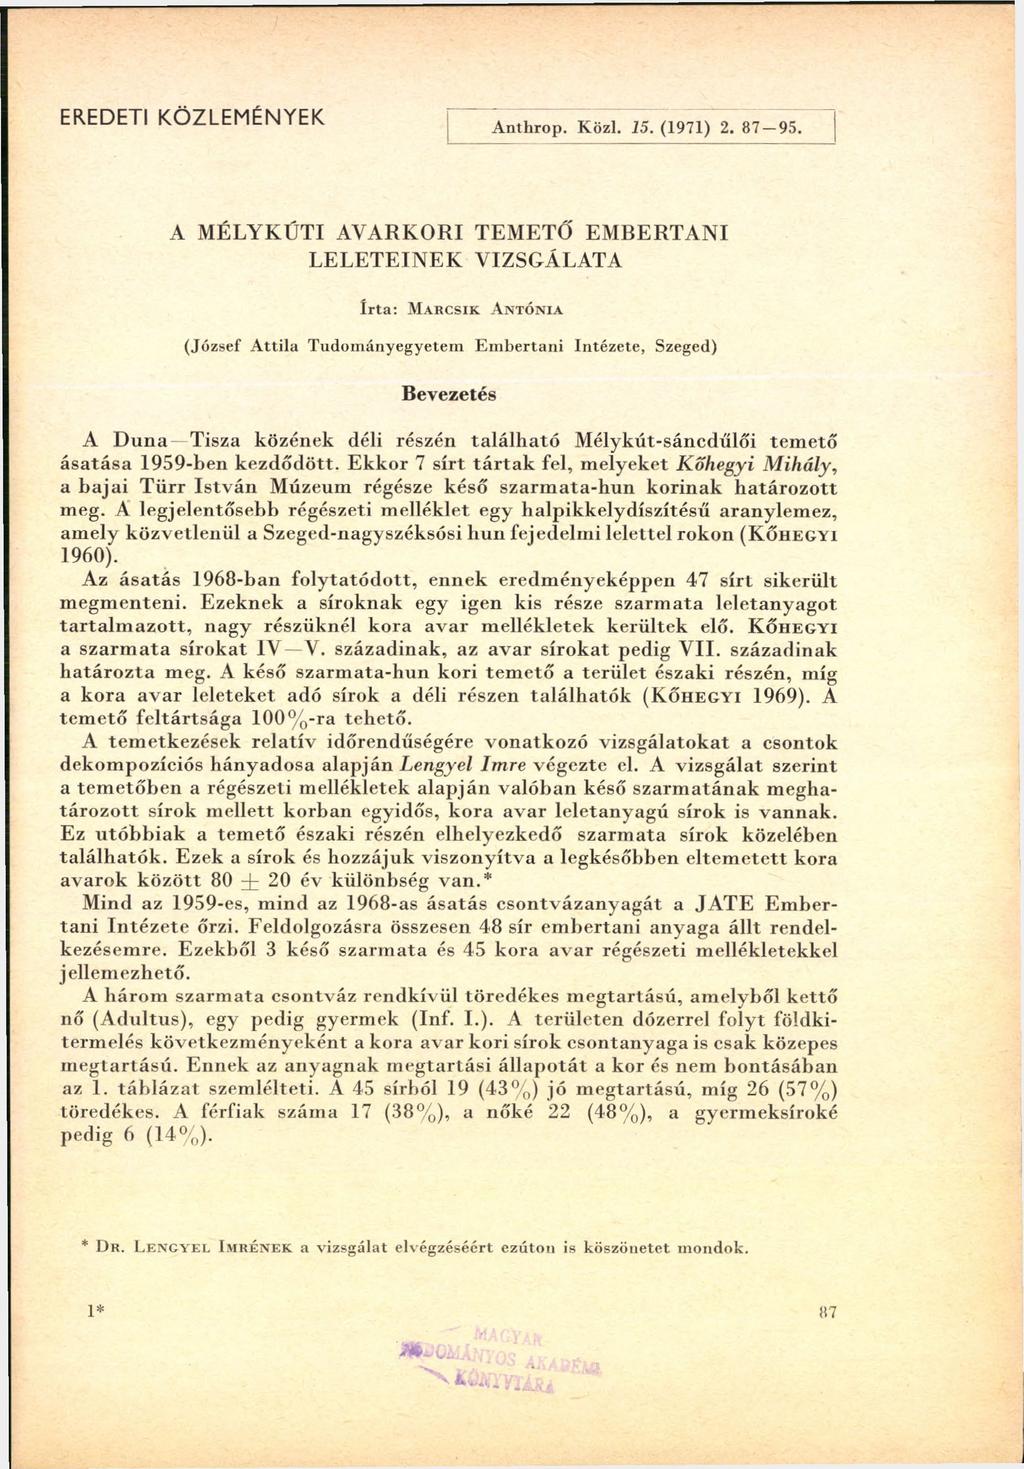 EREDETI KÖZLEMÉNYEK A nthrop. K özi. 15. (1971) 2. 87 95.